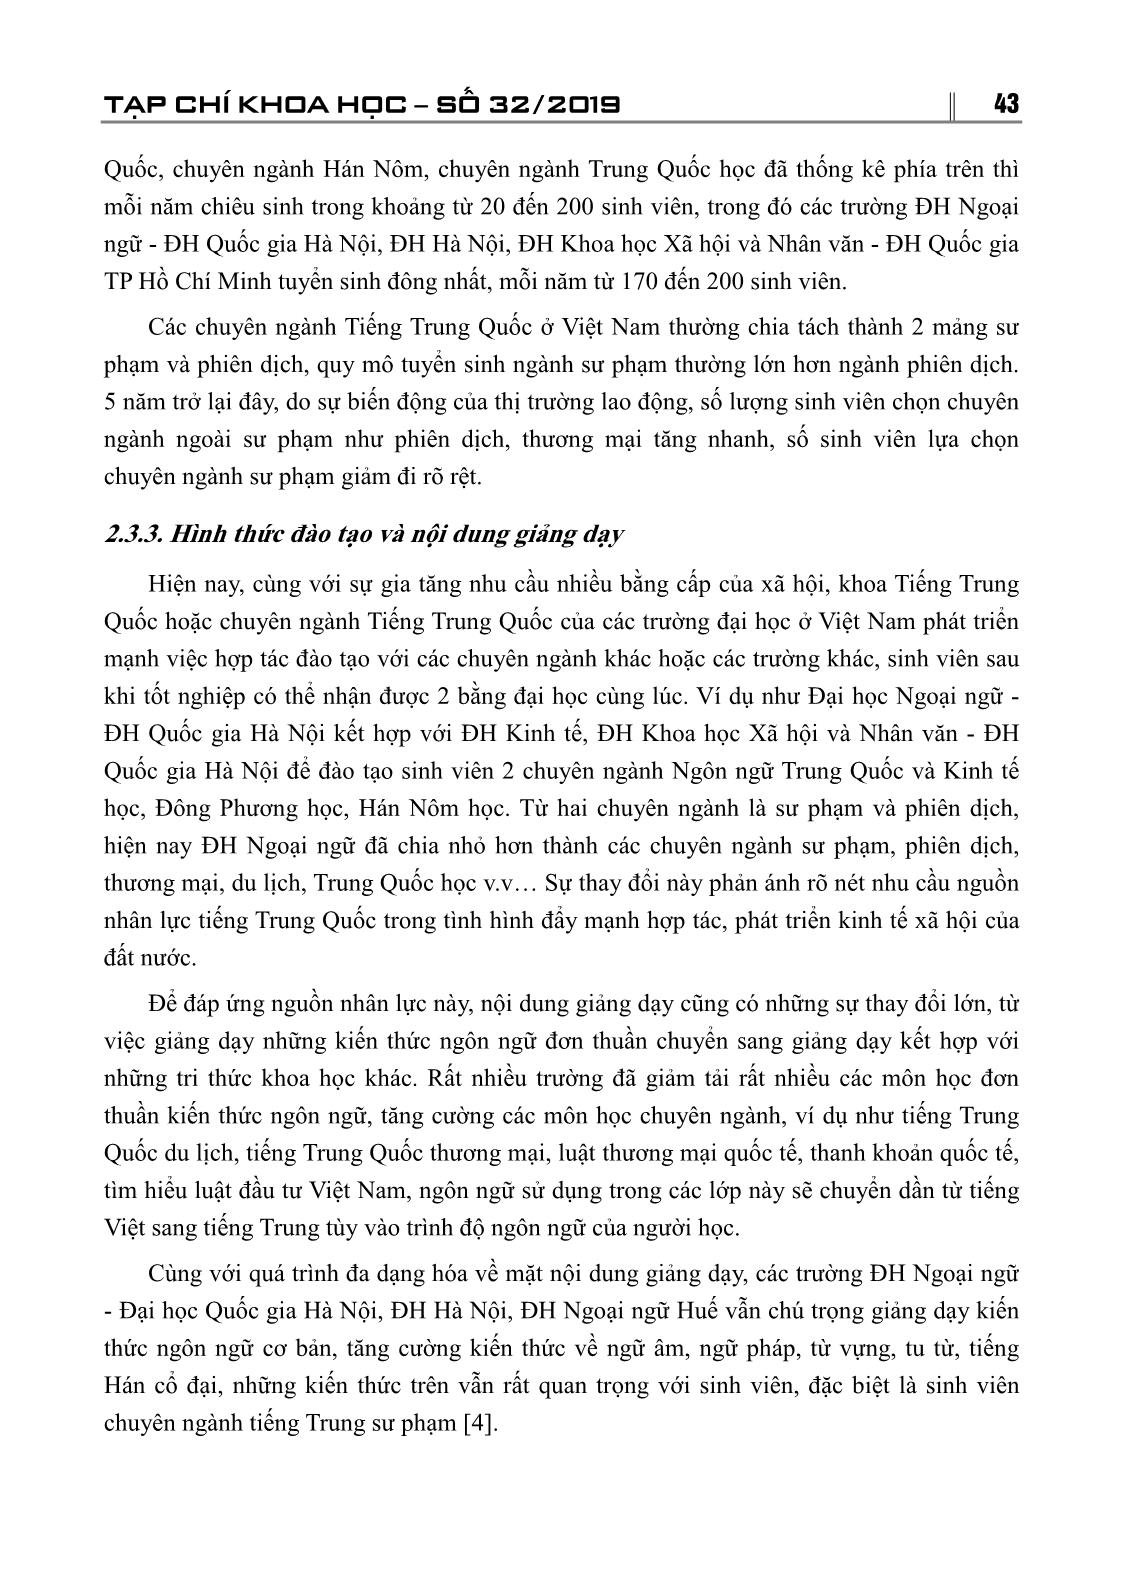 Hiện trạng dạy học tiếng Hán tại Việt Nam trong bối cảnh toàn cầu hóa trang 5